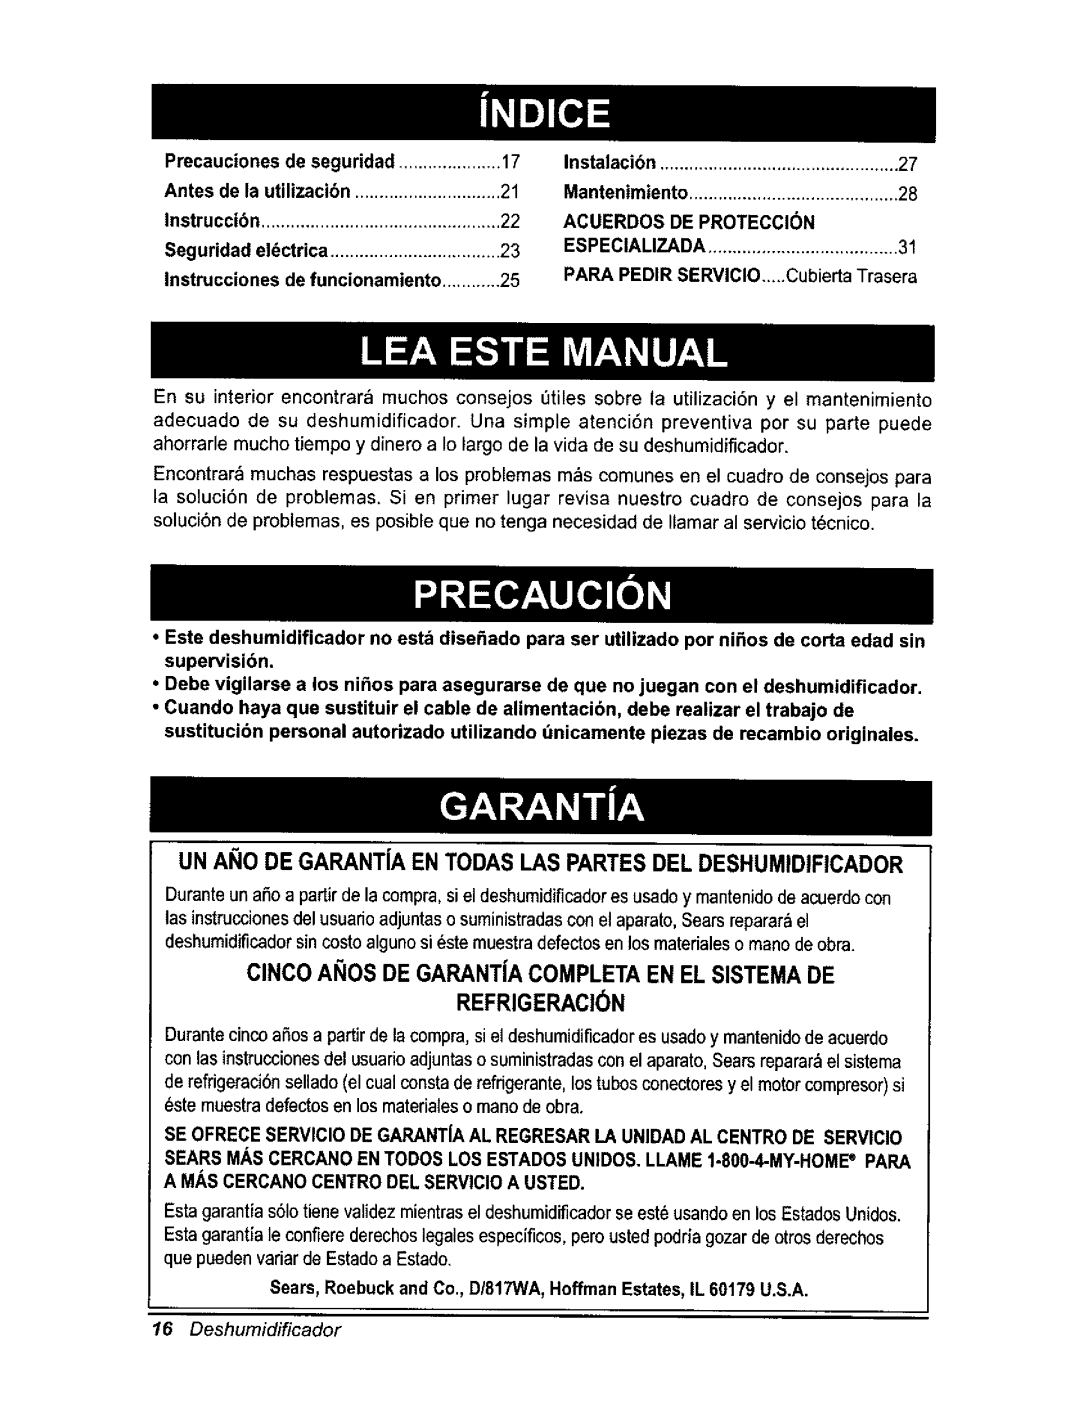 Kenmore 580.54701 owner manual ClNCOANOS DE GARANTJACOMPLETAEN EL SISTEMADE, Refrigeracion, 16Deshumidificador 